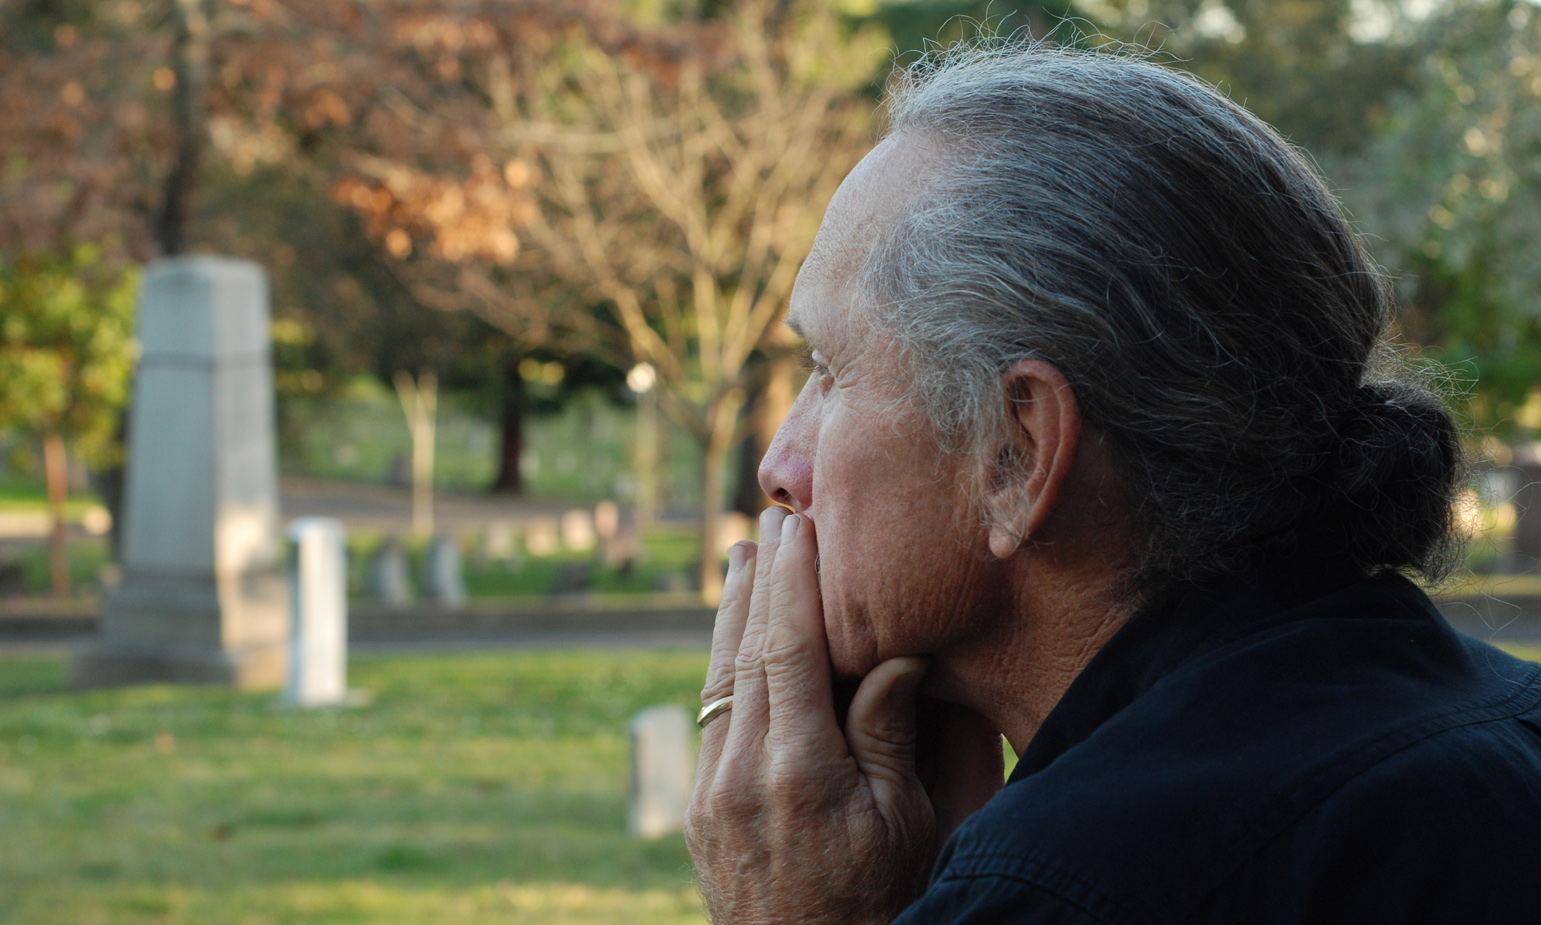 Bereaved, grief-stricken man in foreground, gravestones in the distance